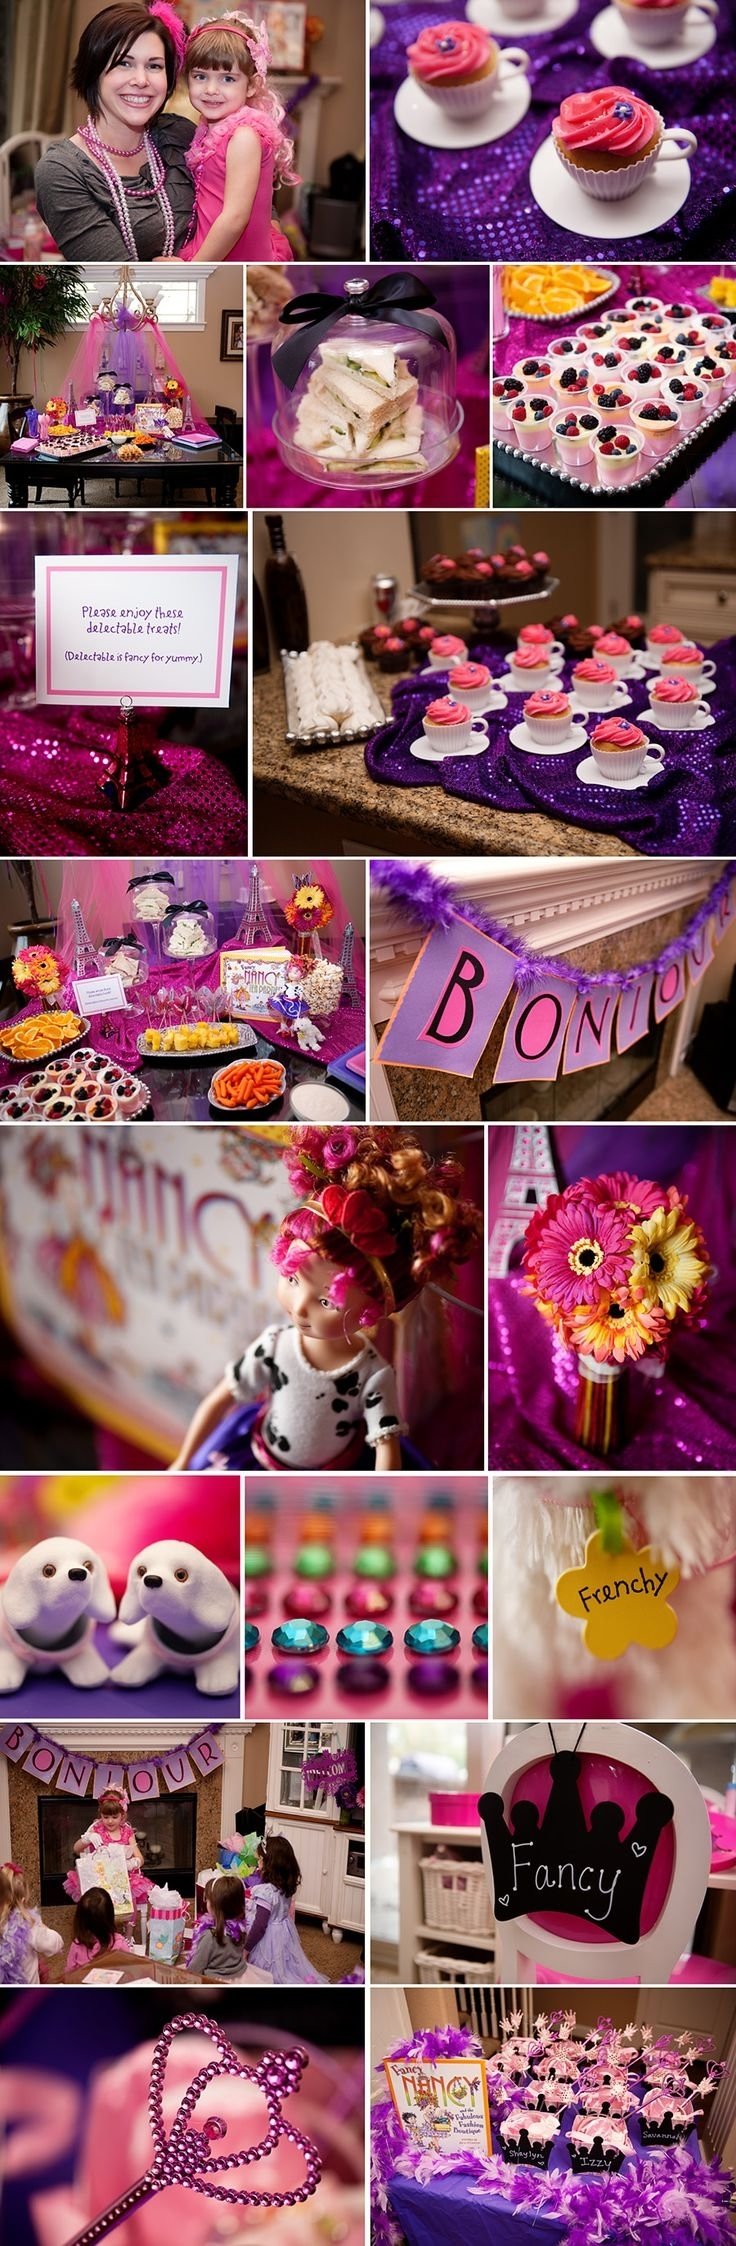 10 Wonderful Fancy Nancy Birthday Party Ideas 15 best fancy nancy party ideas images on pinterest birthday party 1 2022